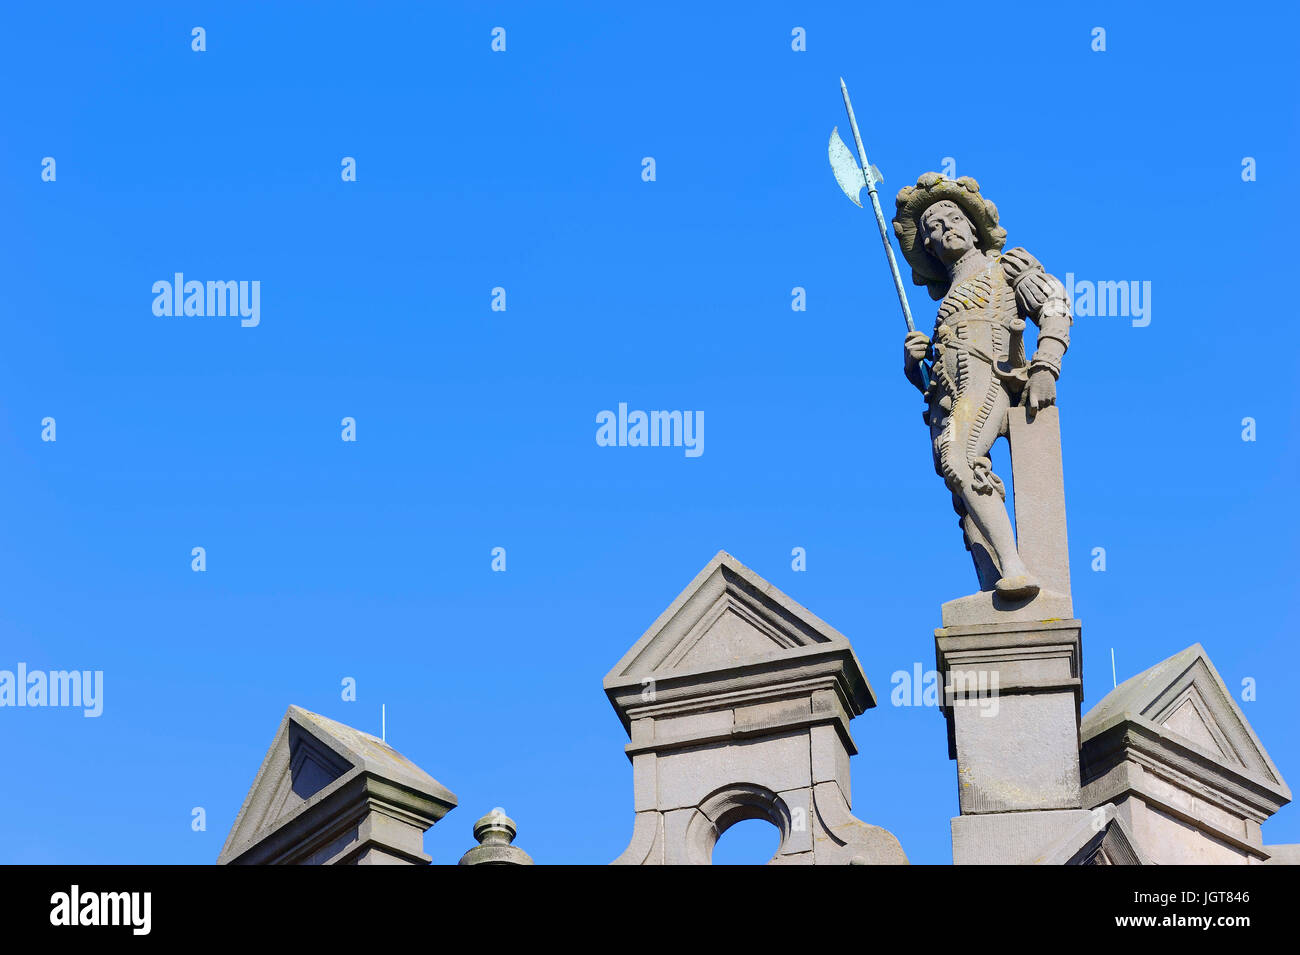 Statua sul vecchio municipio di Arnhem, Paesi Bassi / city hall | statua auf altem Rathaus, Arnheim, Gelderland, Niederlande Foto Stock